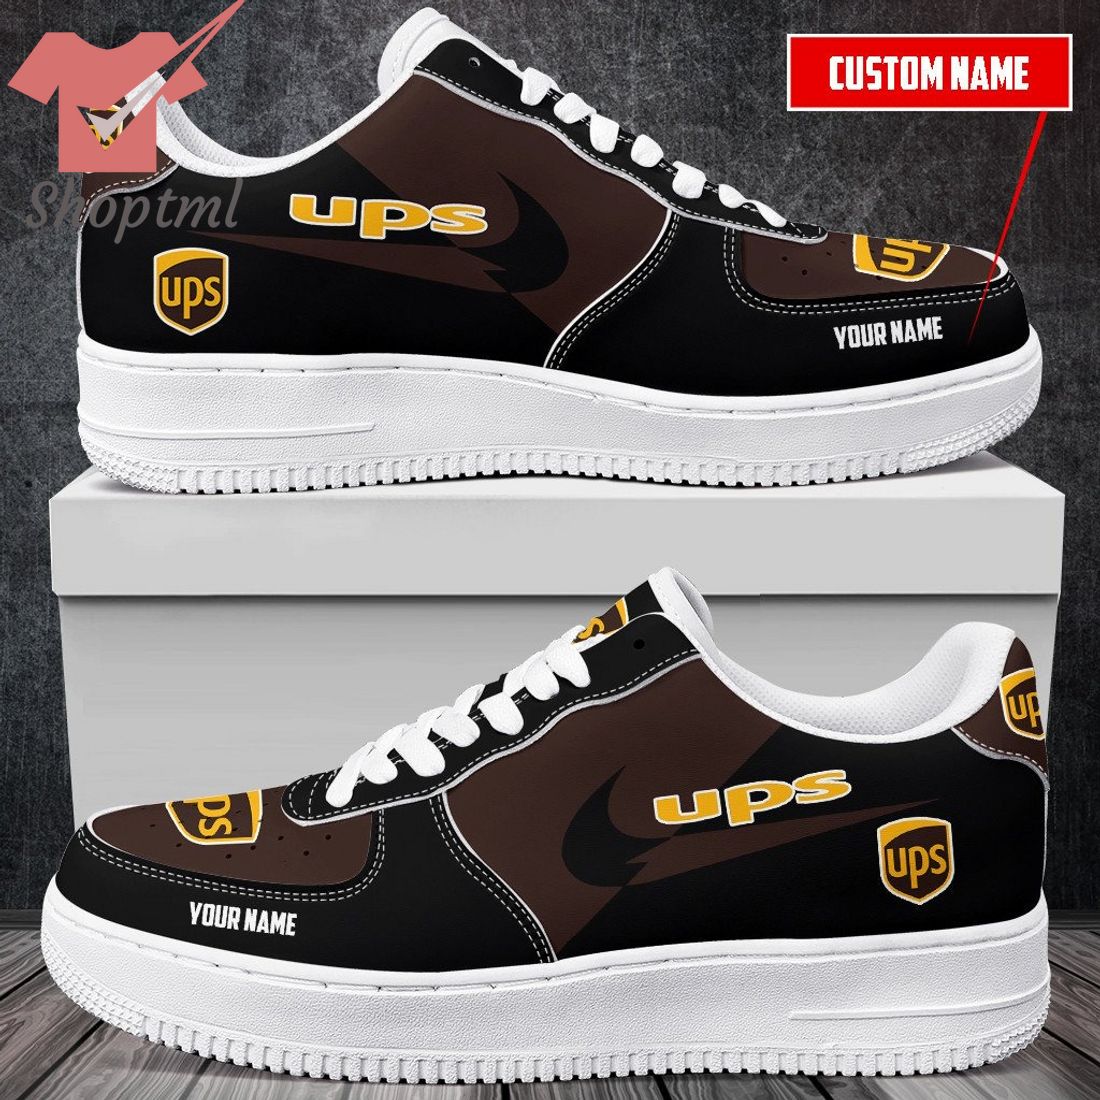 UPS Custom Name Nike Air Force One Shoes